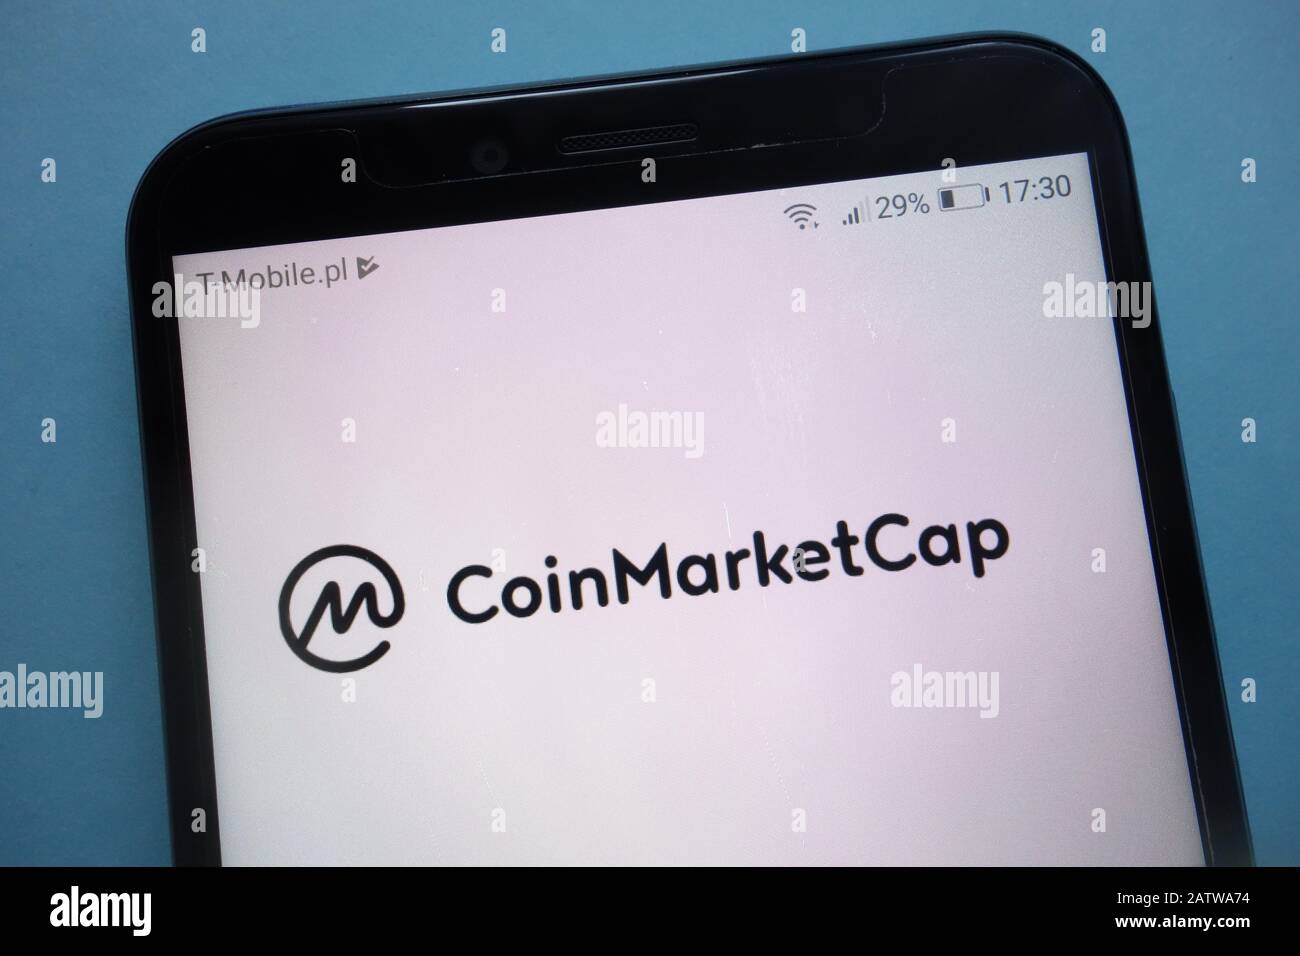 CoinMarketCap logo on smartphone Stock Photo